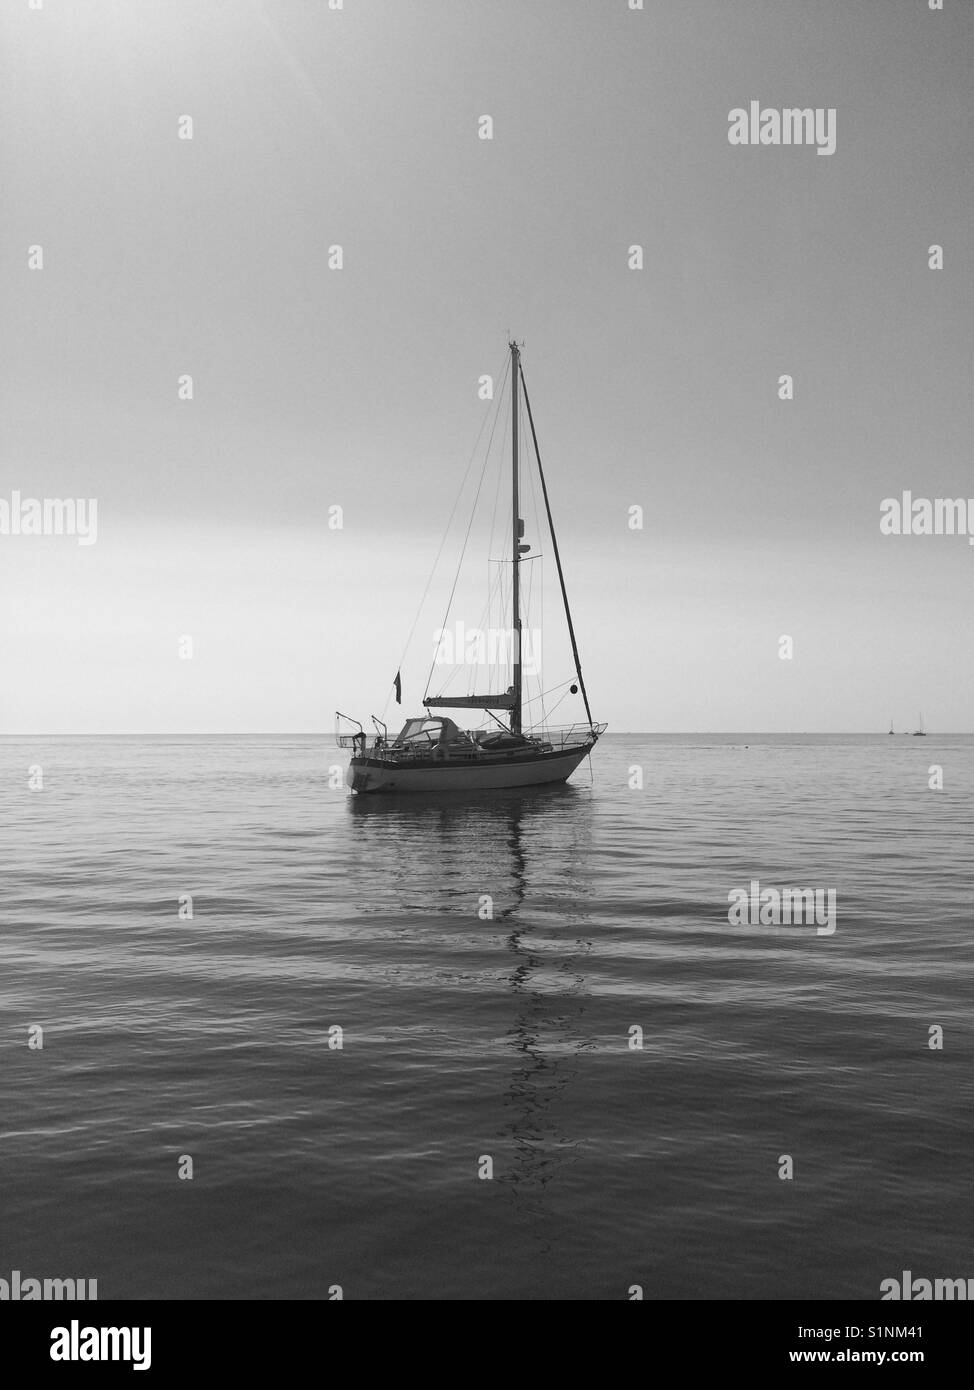 Sailing boat moored at sea Stock Photo